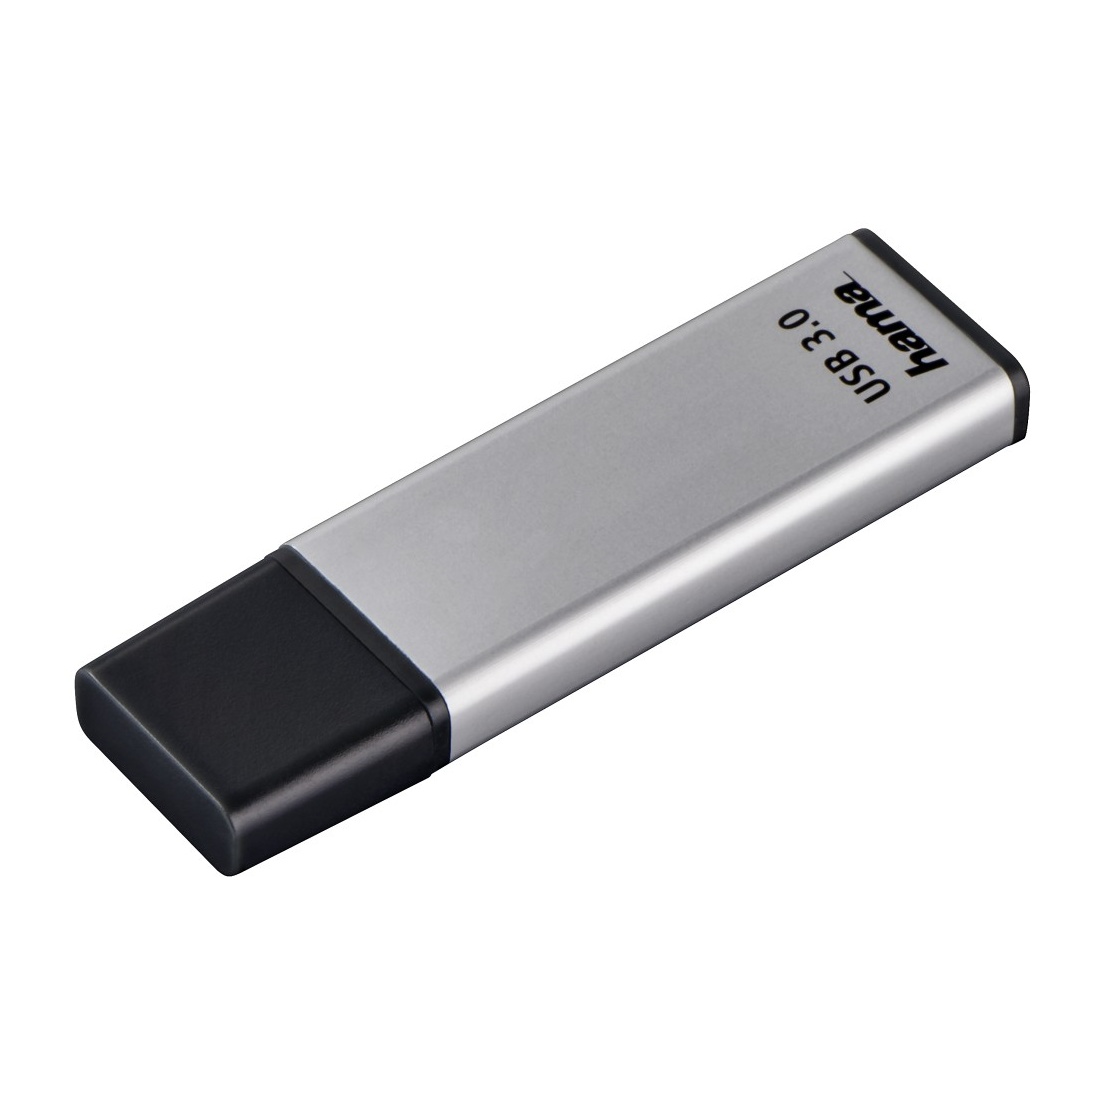 Bild von FlashPen Classic 256 GB silber USB 3.0